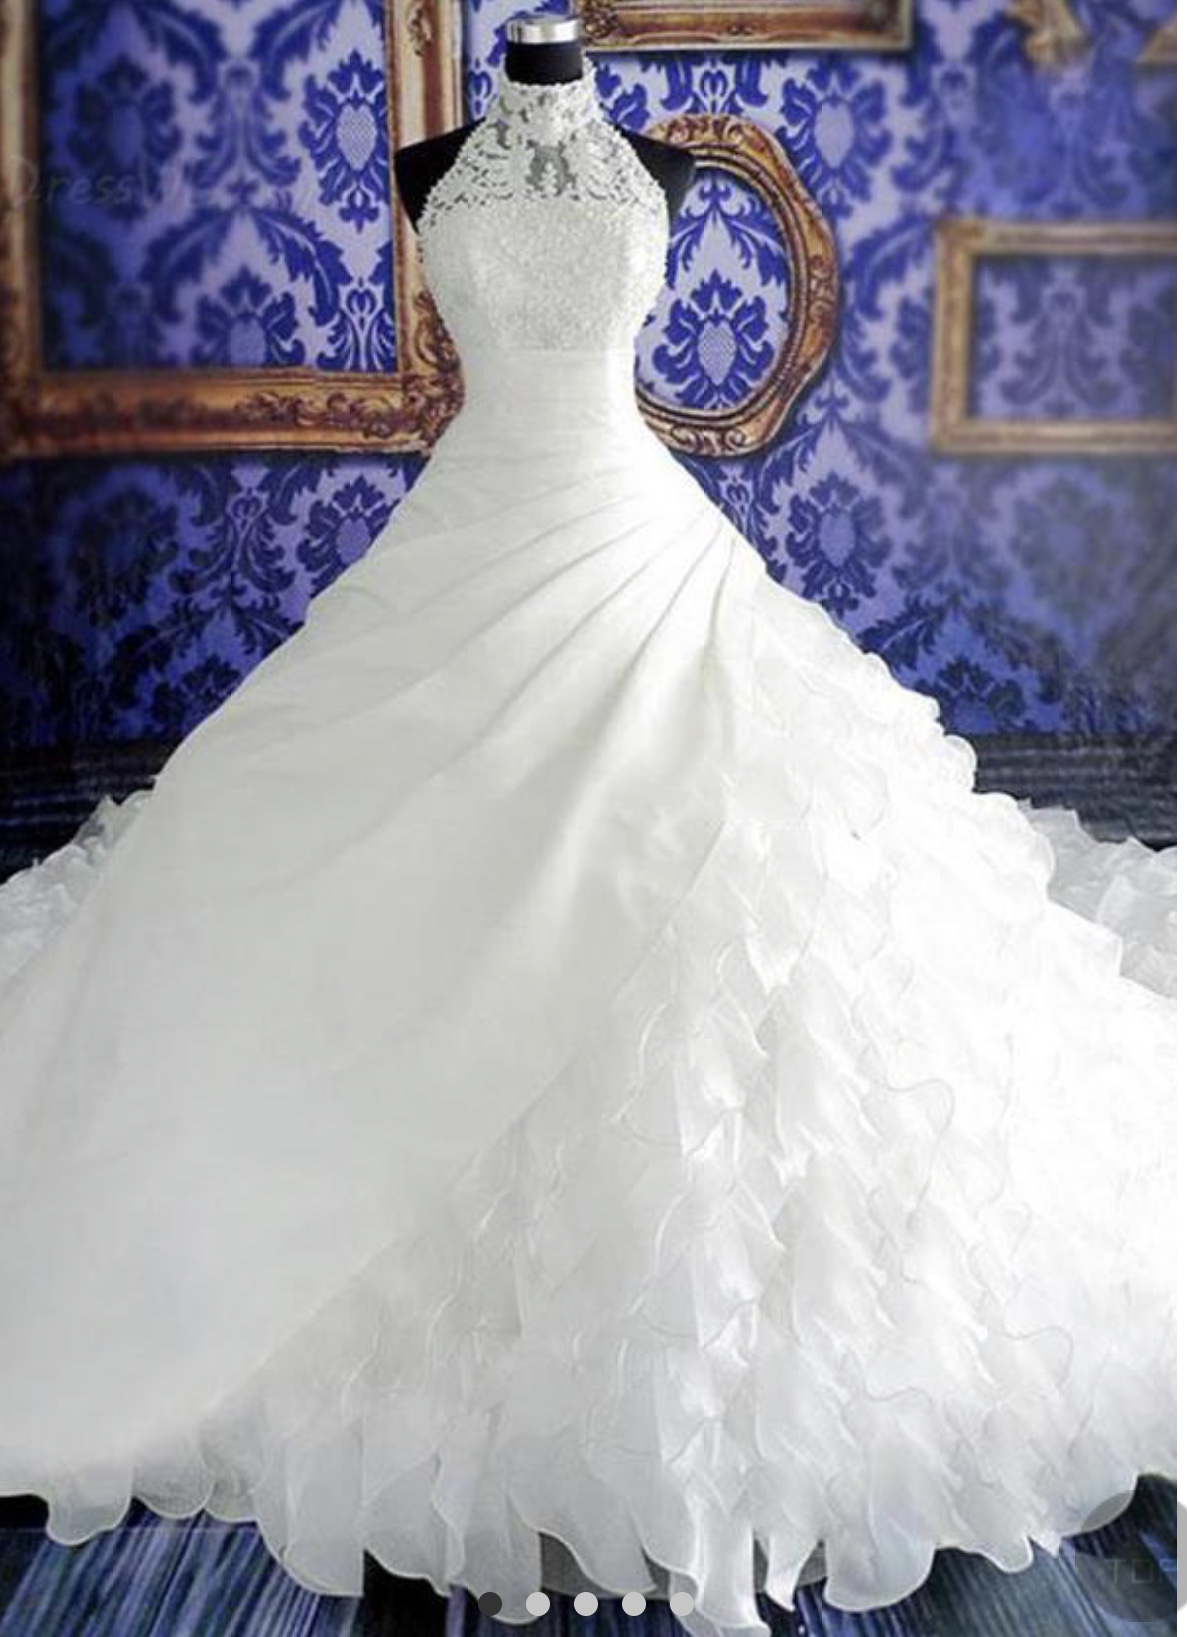 婚禮統籌師Queeny Ng之婚禮統籌師專欄: 婚紗穿得漂亮就已經可以了